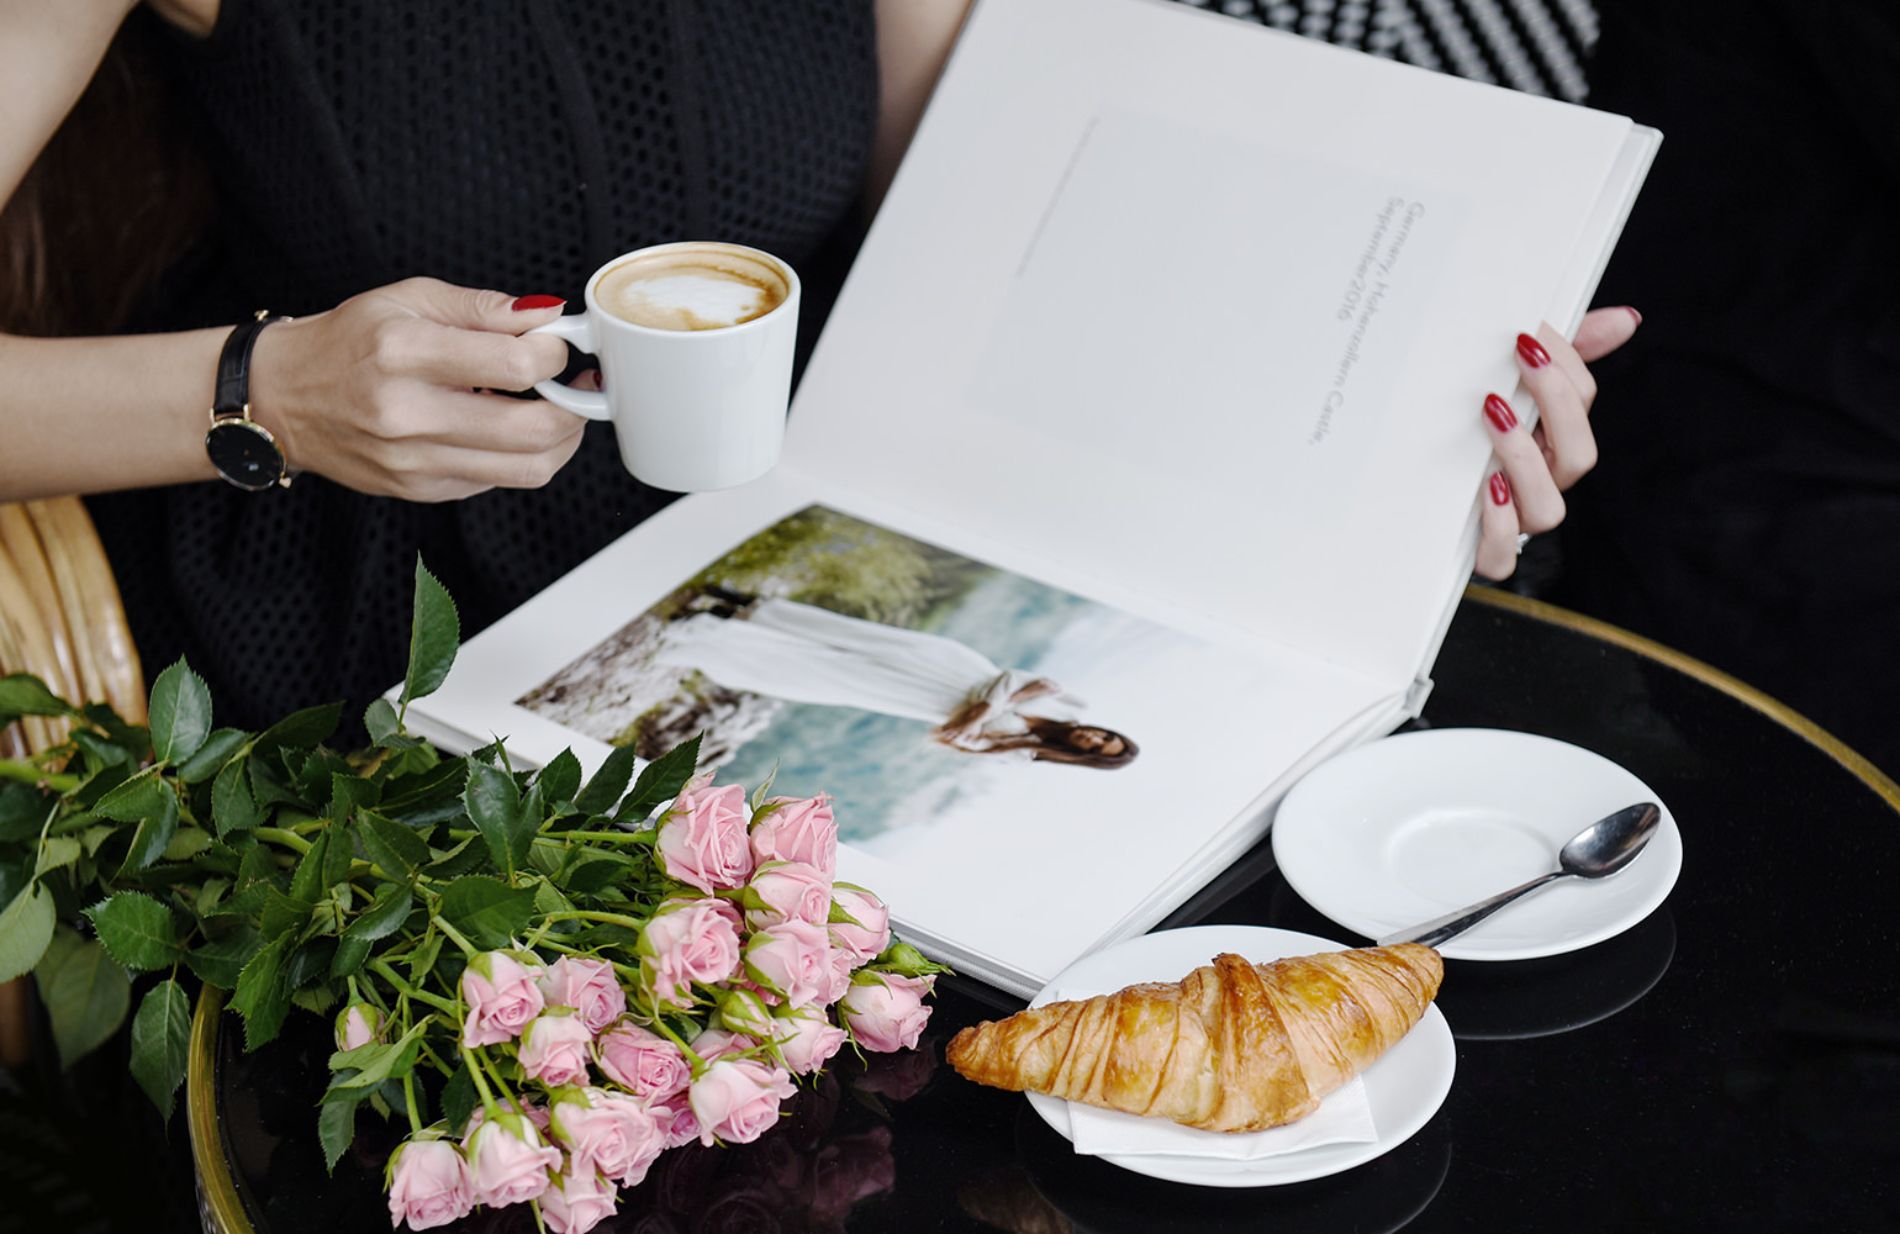 Frau blättert durch ein Fotobuch neben Croissant und Kaffee.